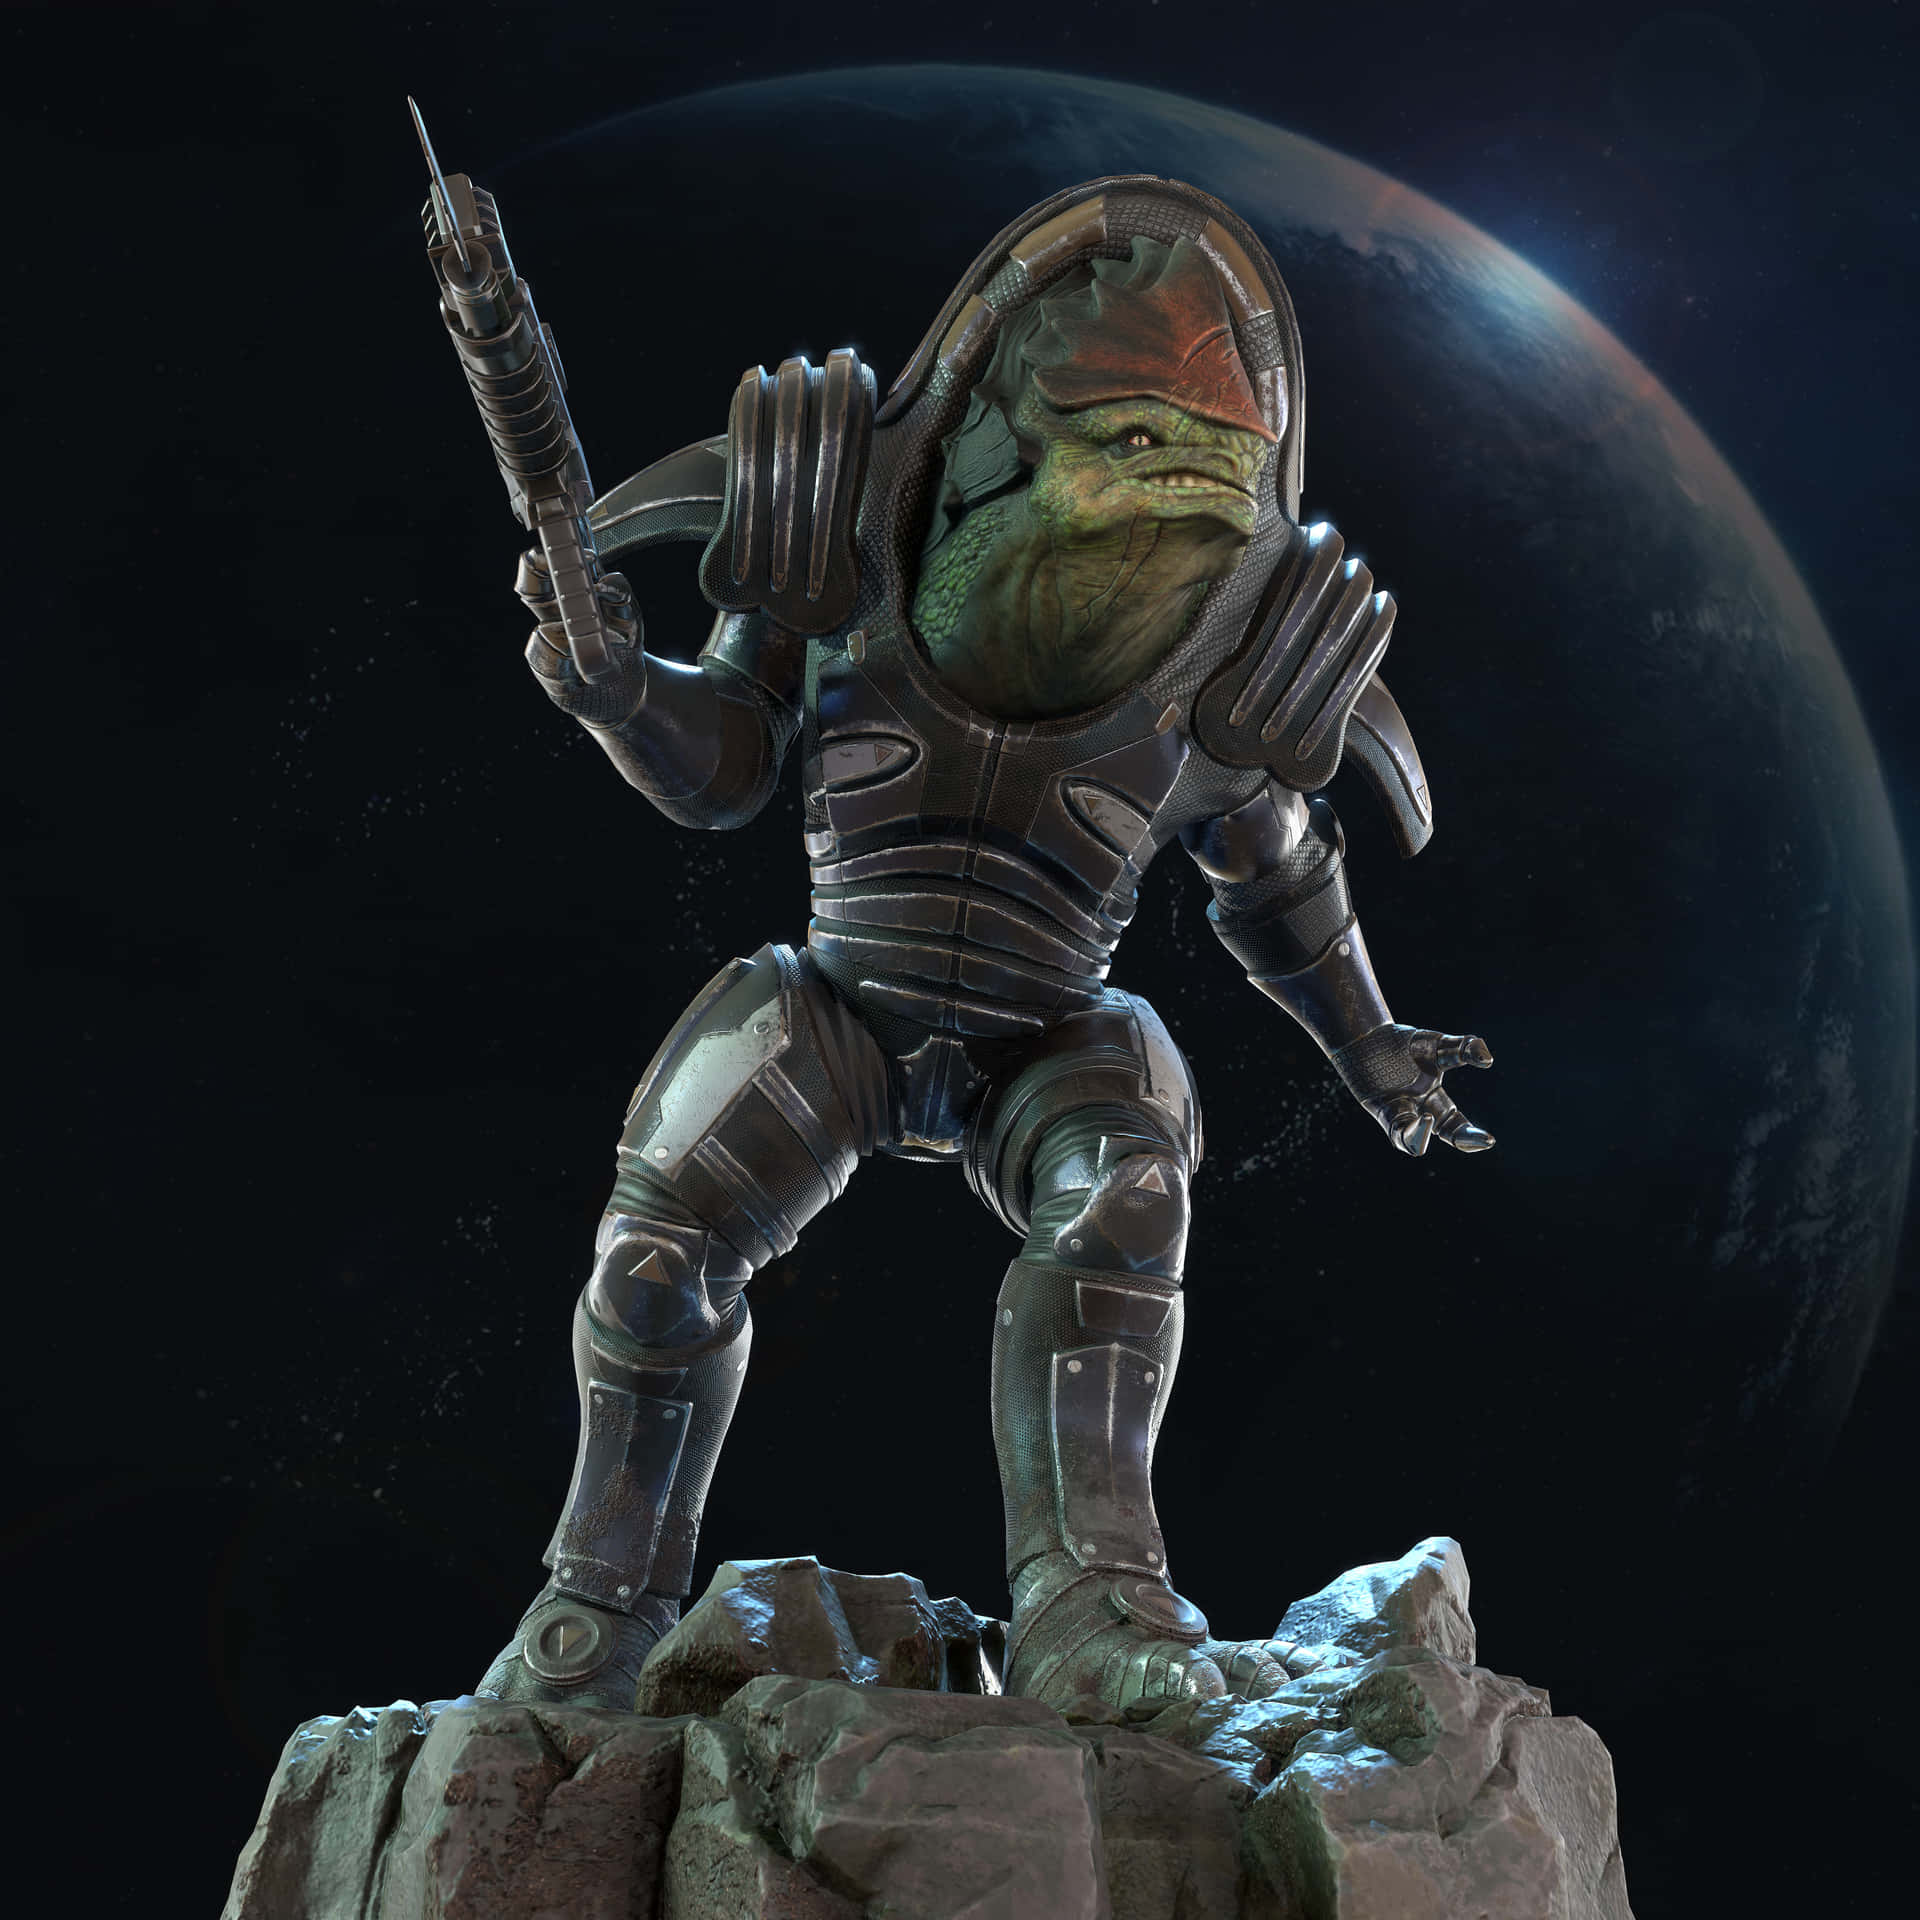 Urdnot Wrex, the powerful Krogan warrior from Mass Effect Wallpaper